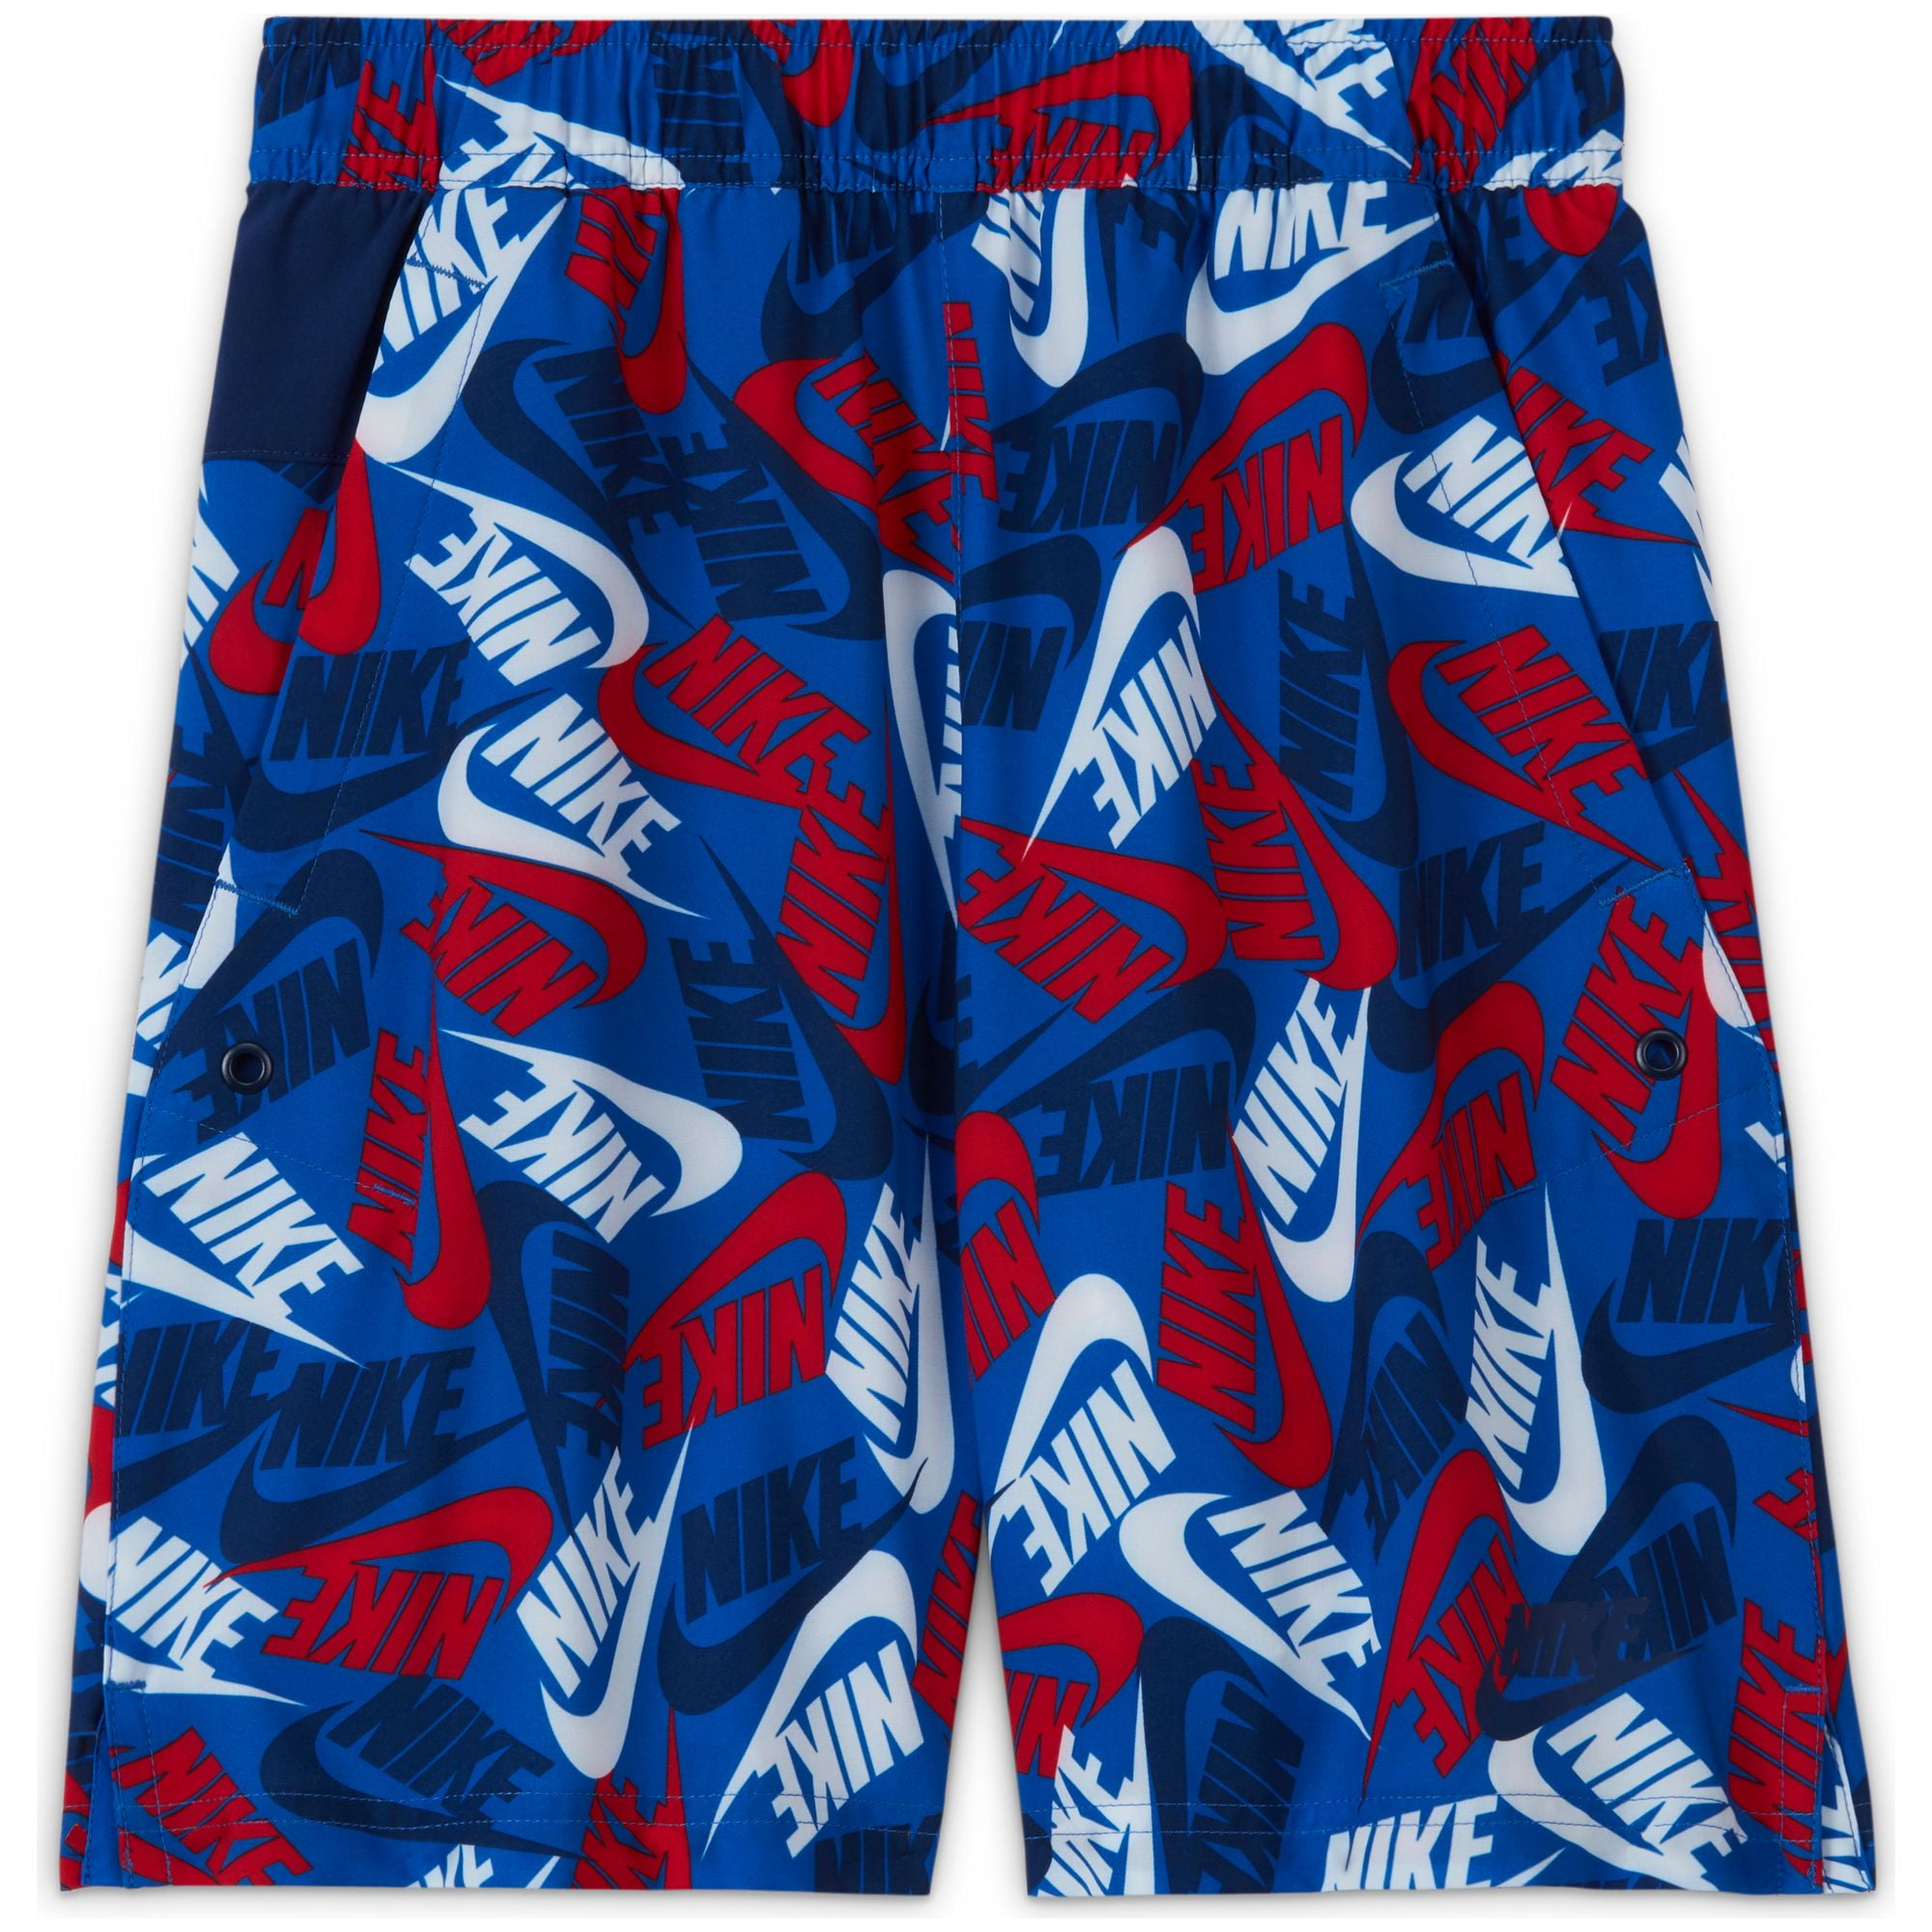 Boys' Sportswear Shorts Medium - Walmart.com